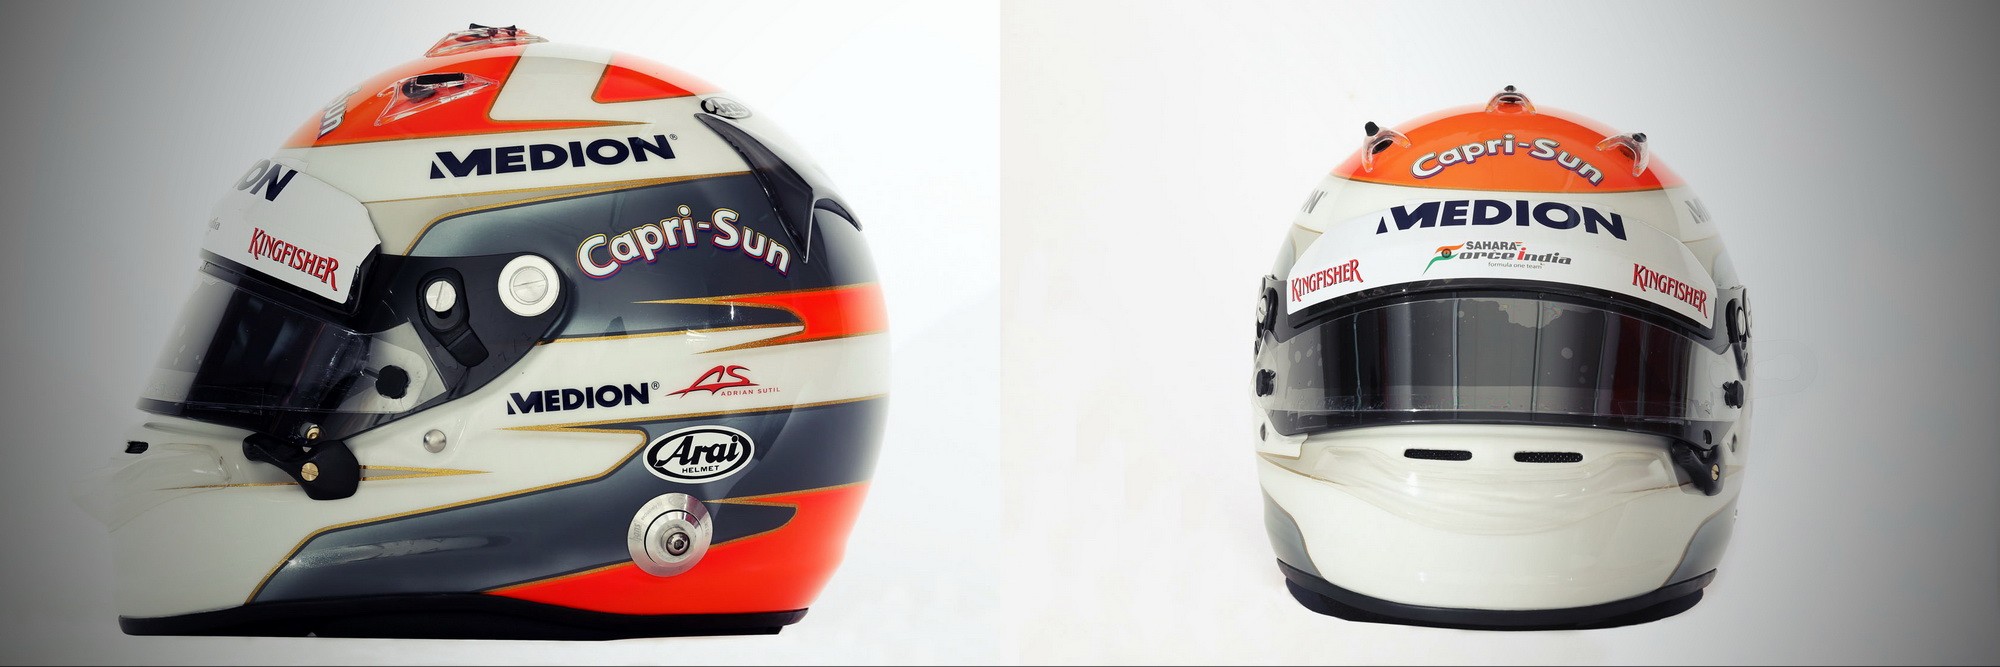 Шлем Адриана Сутиля на сезон 2013 года | 2013 helmet of Adrian Sutil